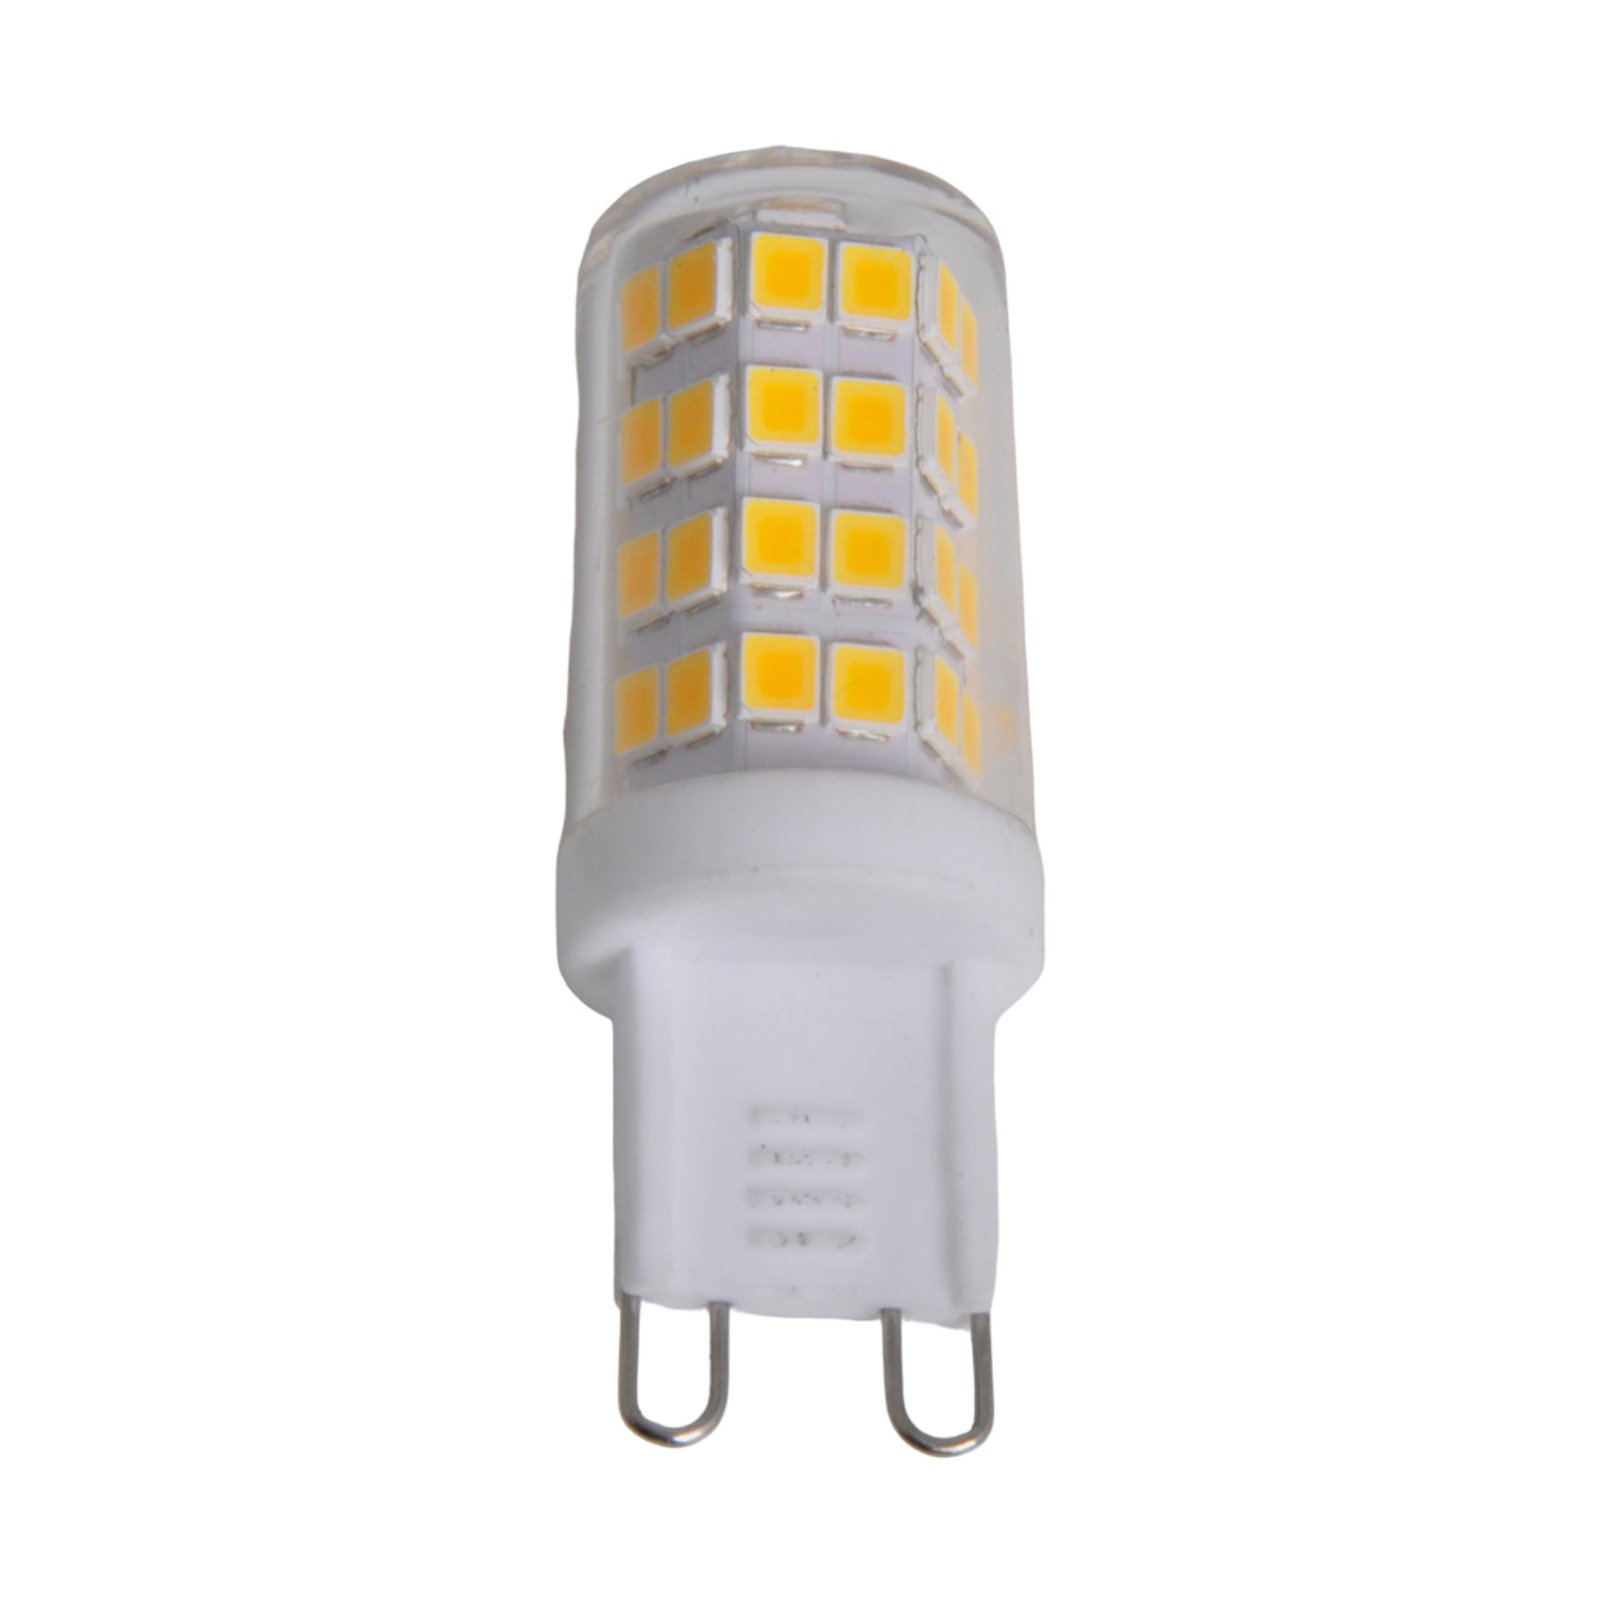 Ampoule broche LED G9 3W blanc chaud 3 000K 330lm